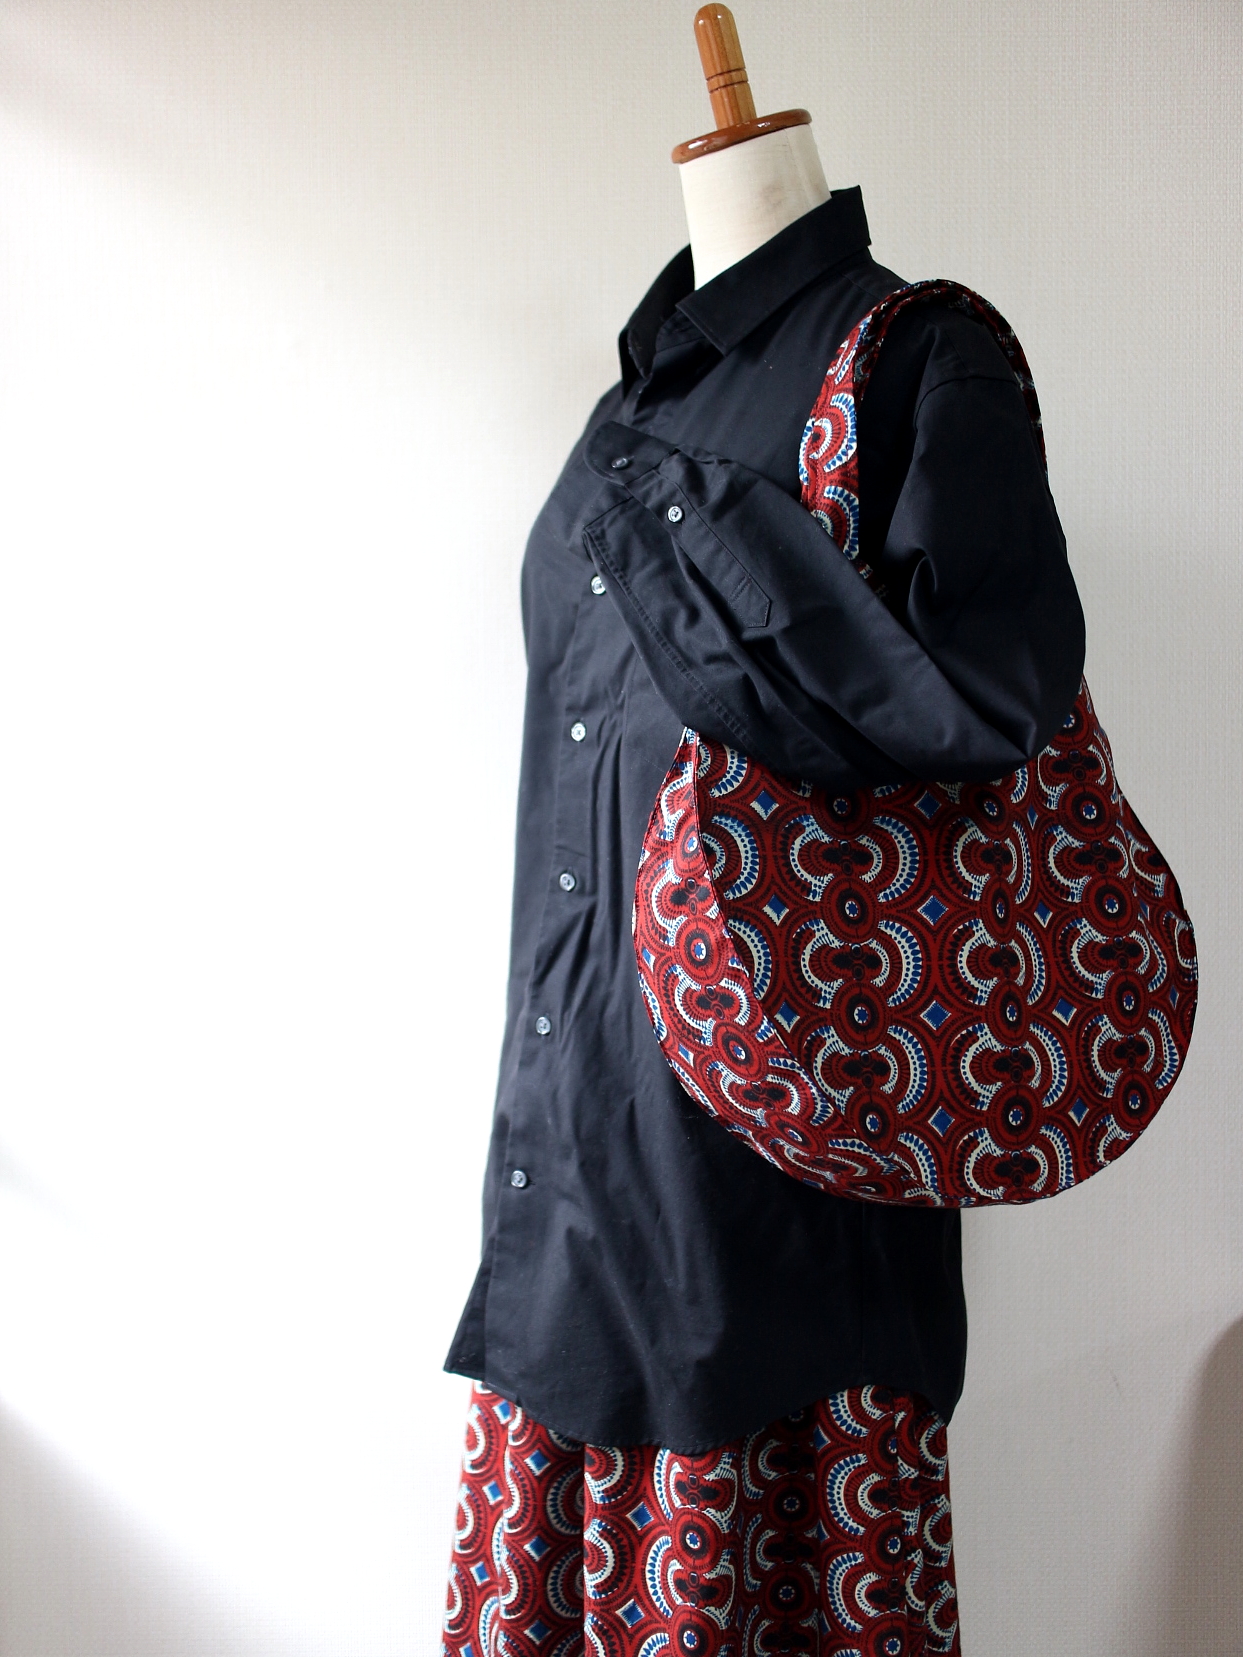 スカート、まんまるバッグ。オーダーメイド/アフリカ雑貨kwaMALOGO